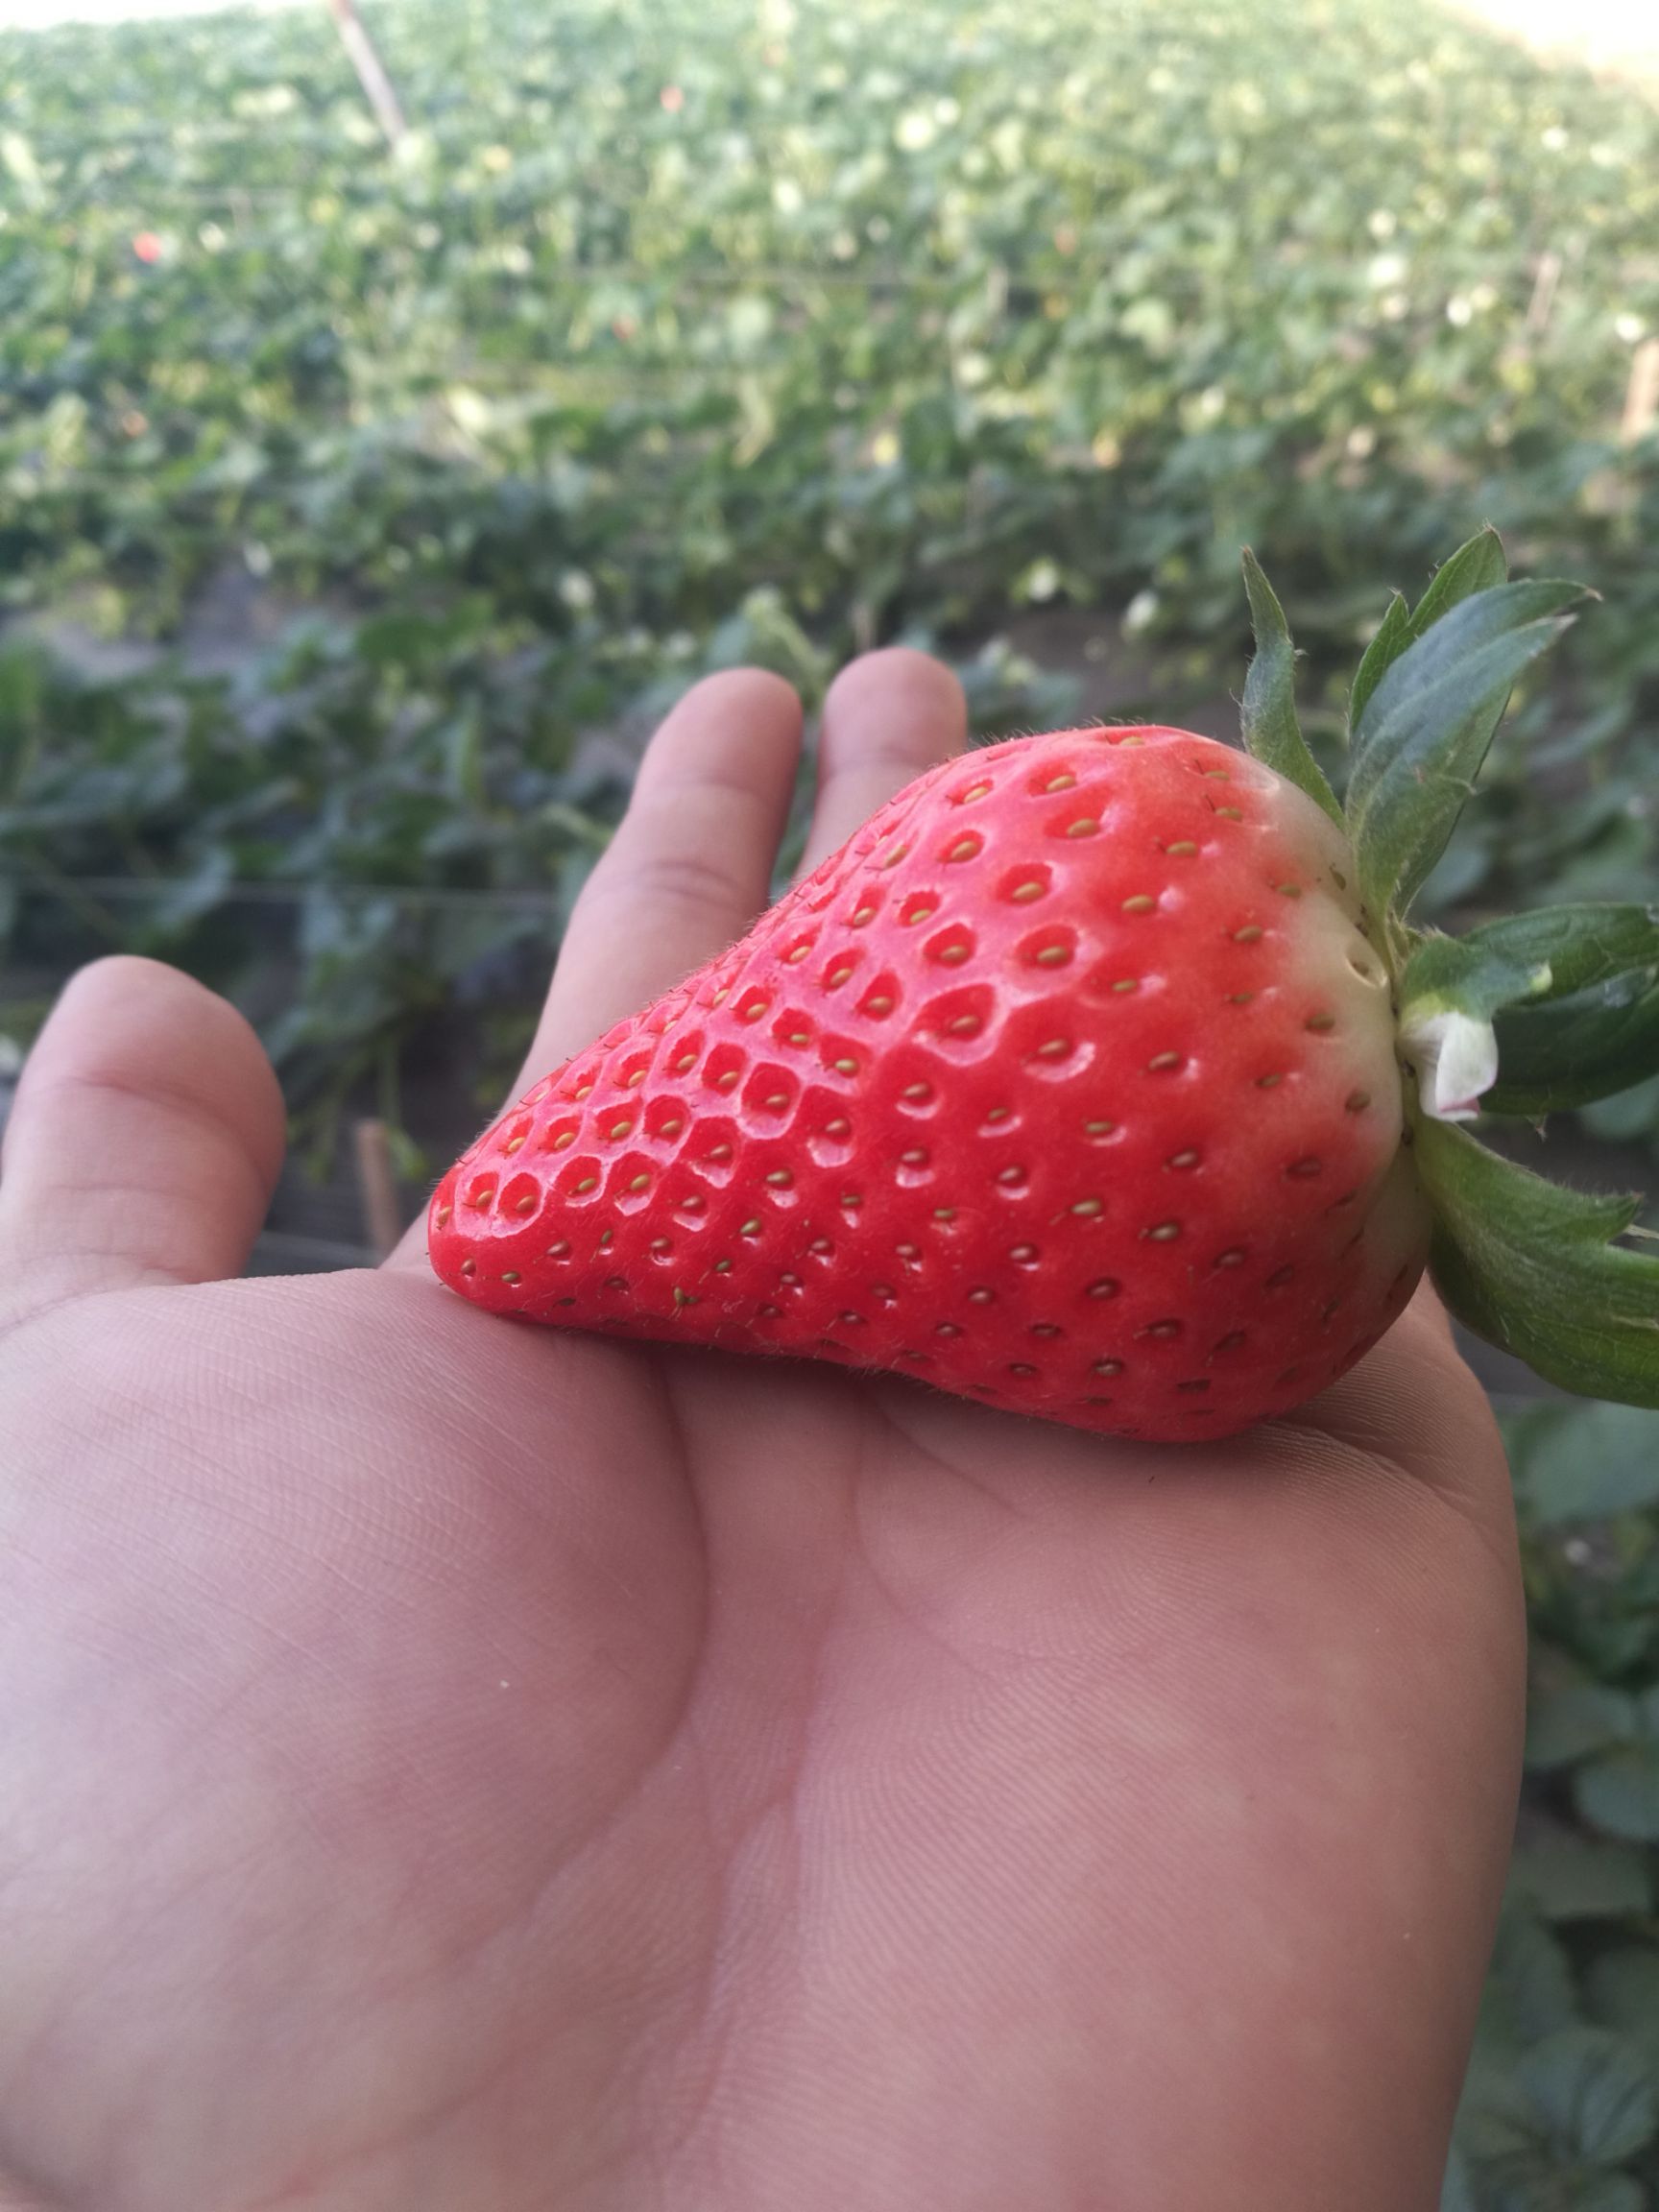 甜宝草莓图片真实图片